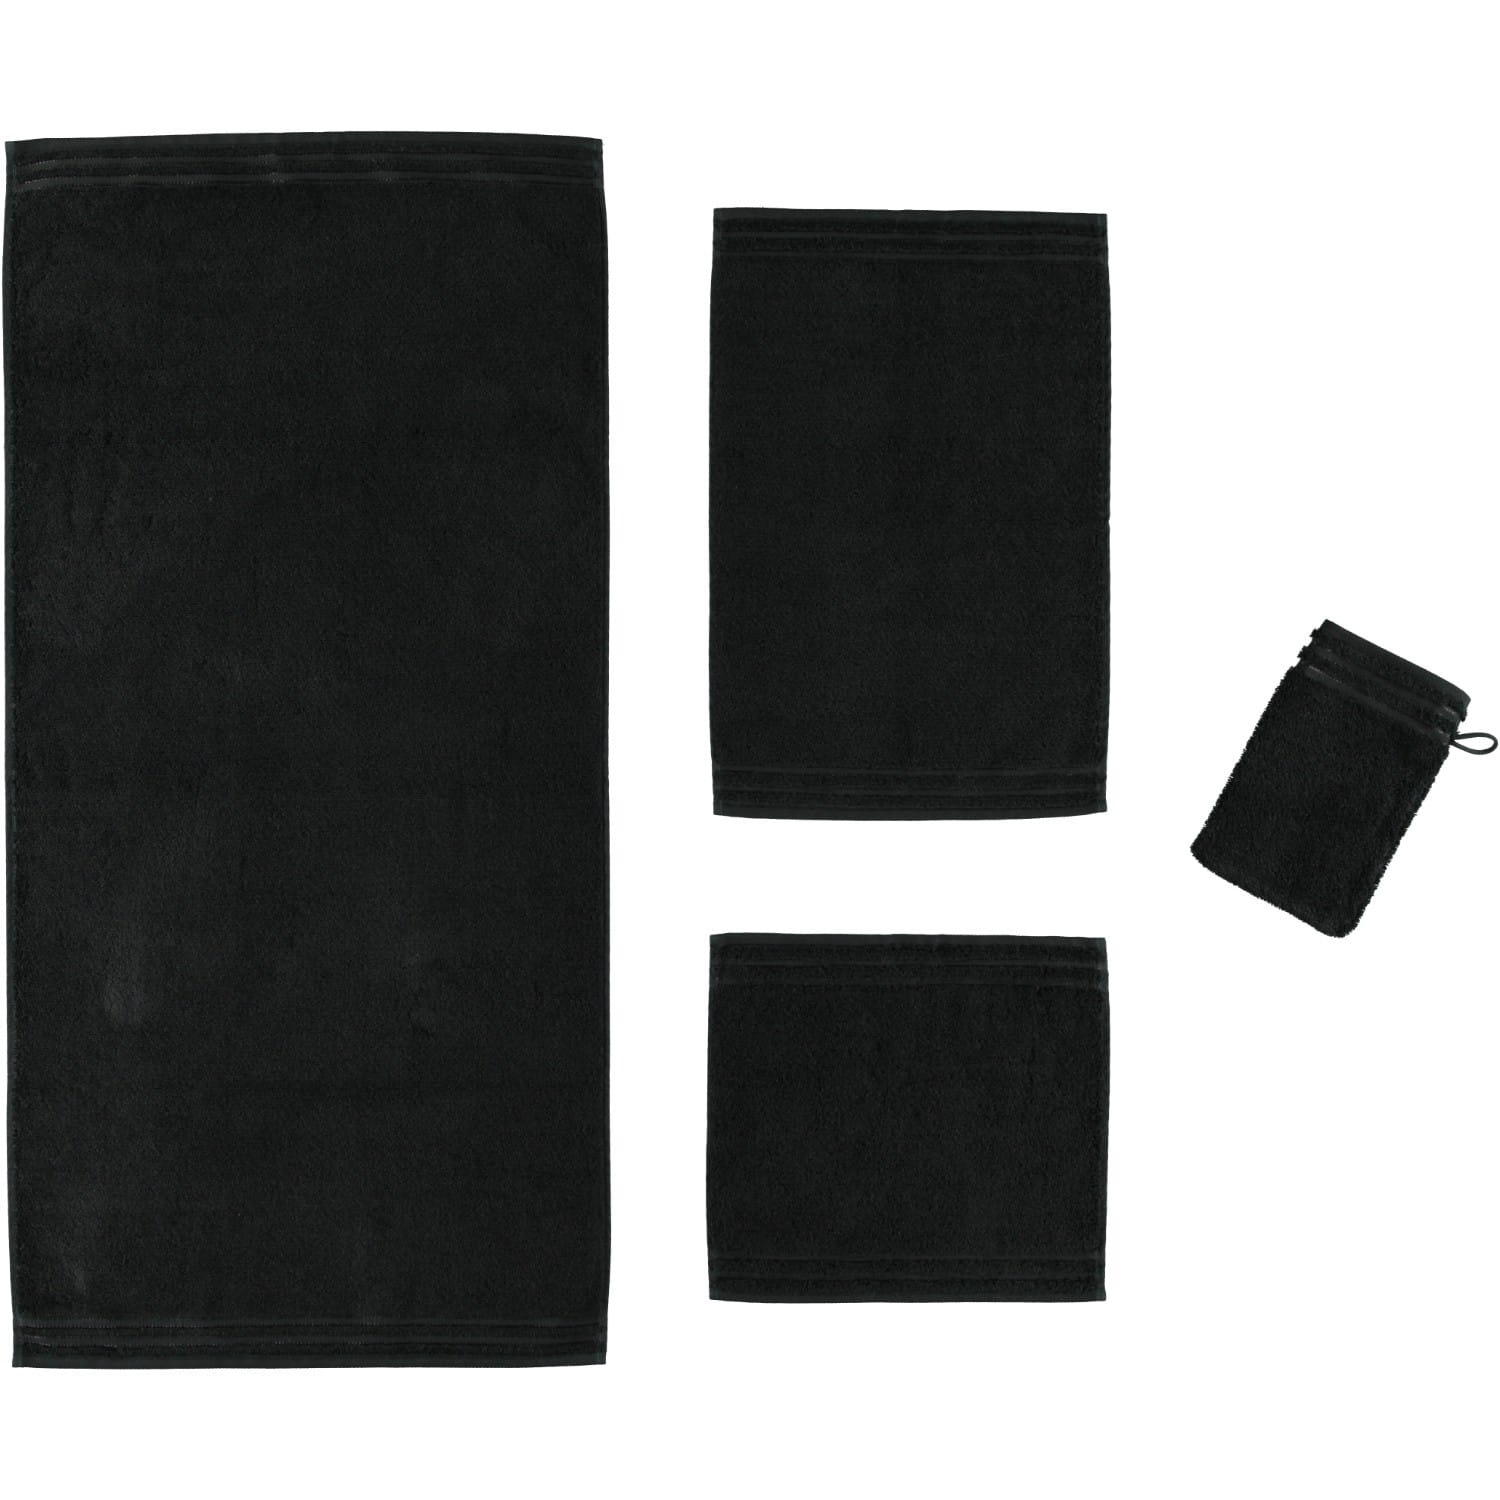 Vossen 790 Farbe: Vossen schwarz - Handtücher Calypso Vossen Marken | | - Feeling |